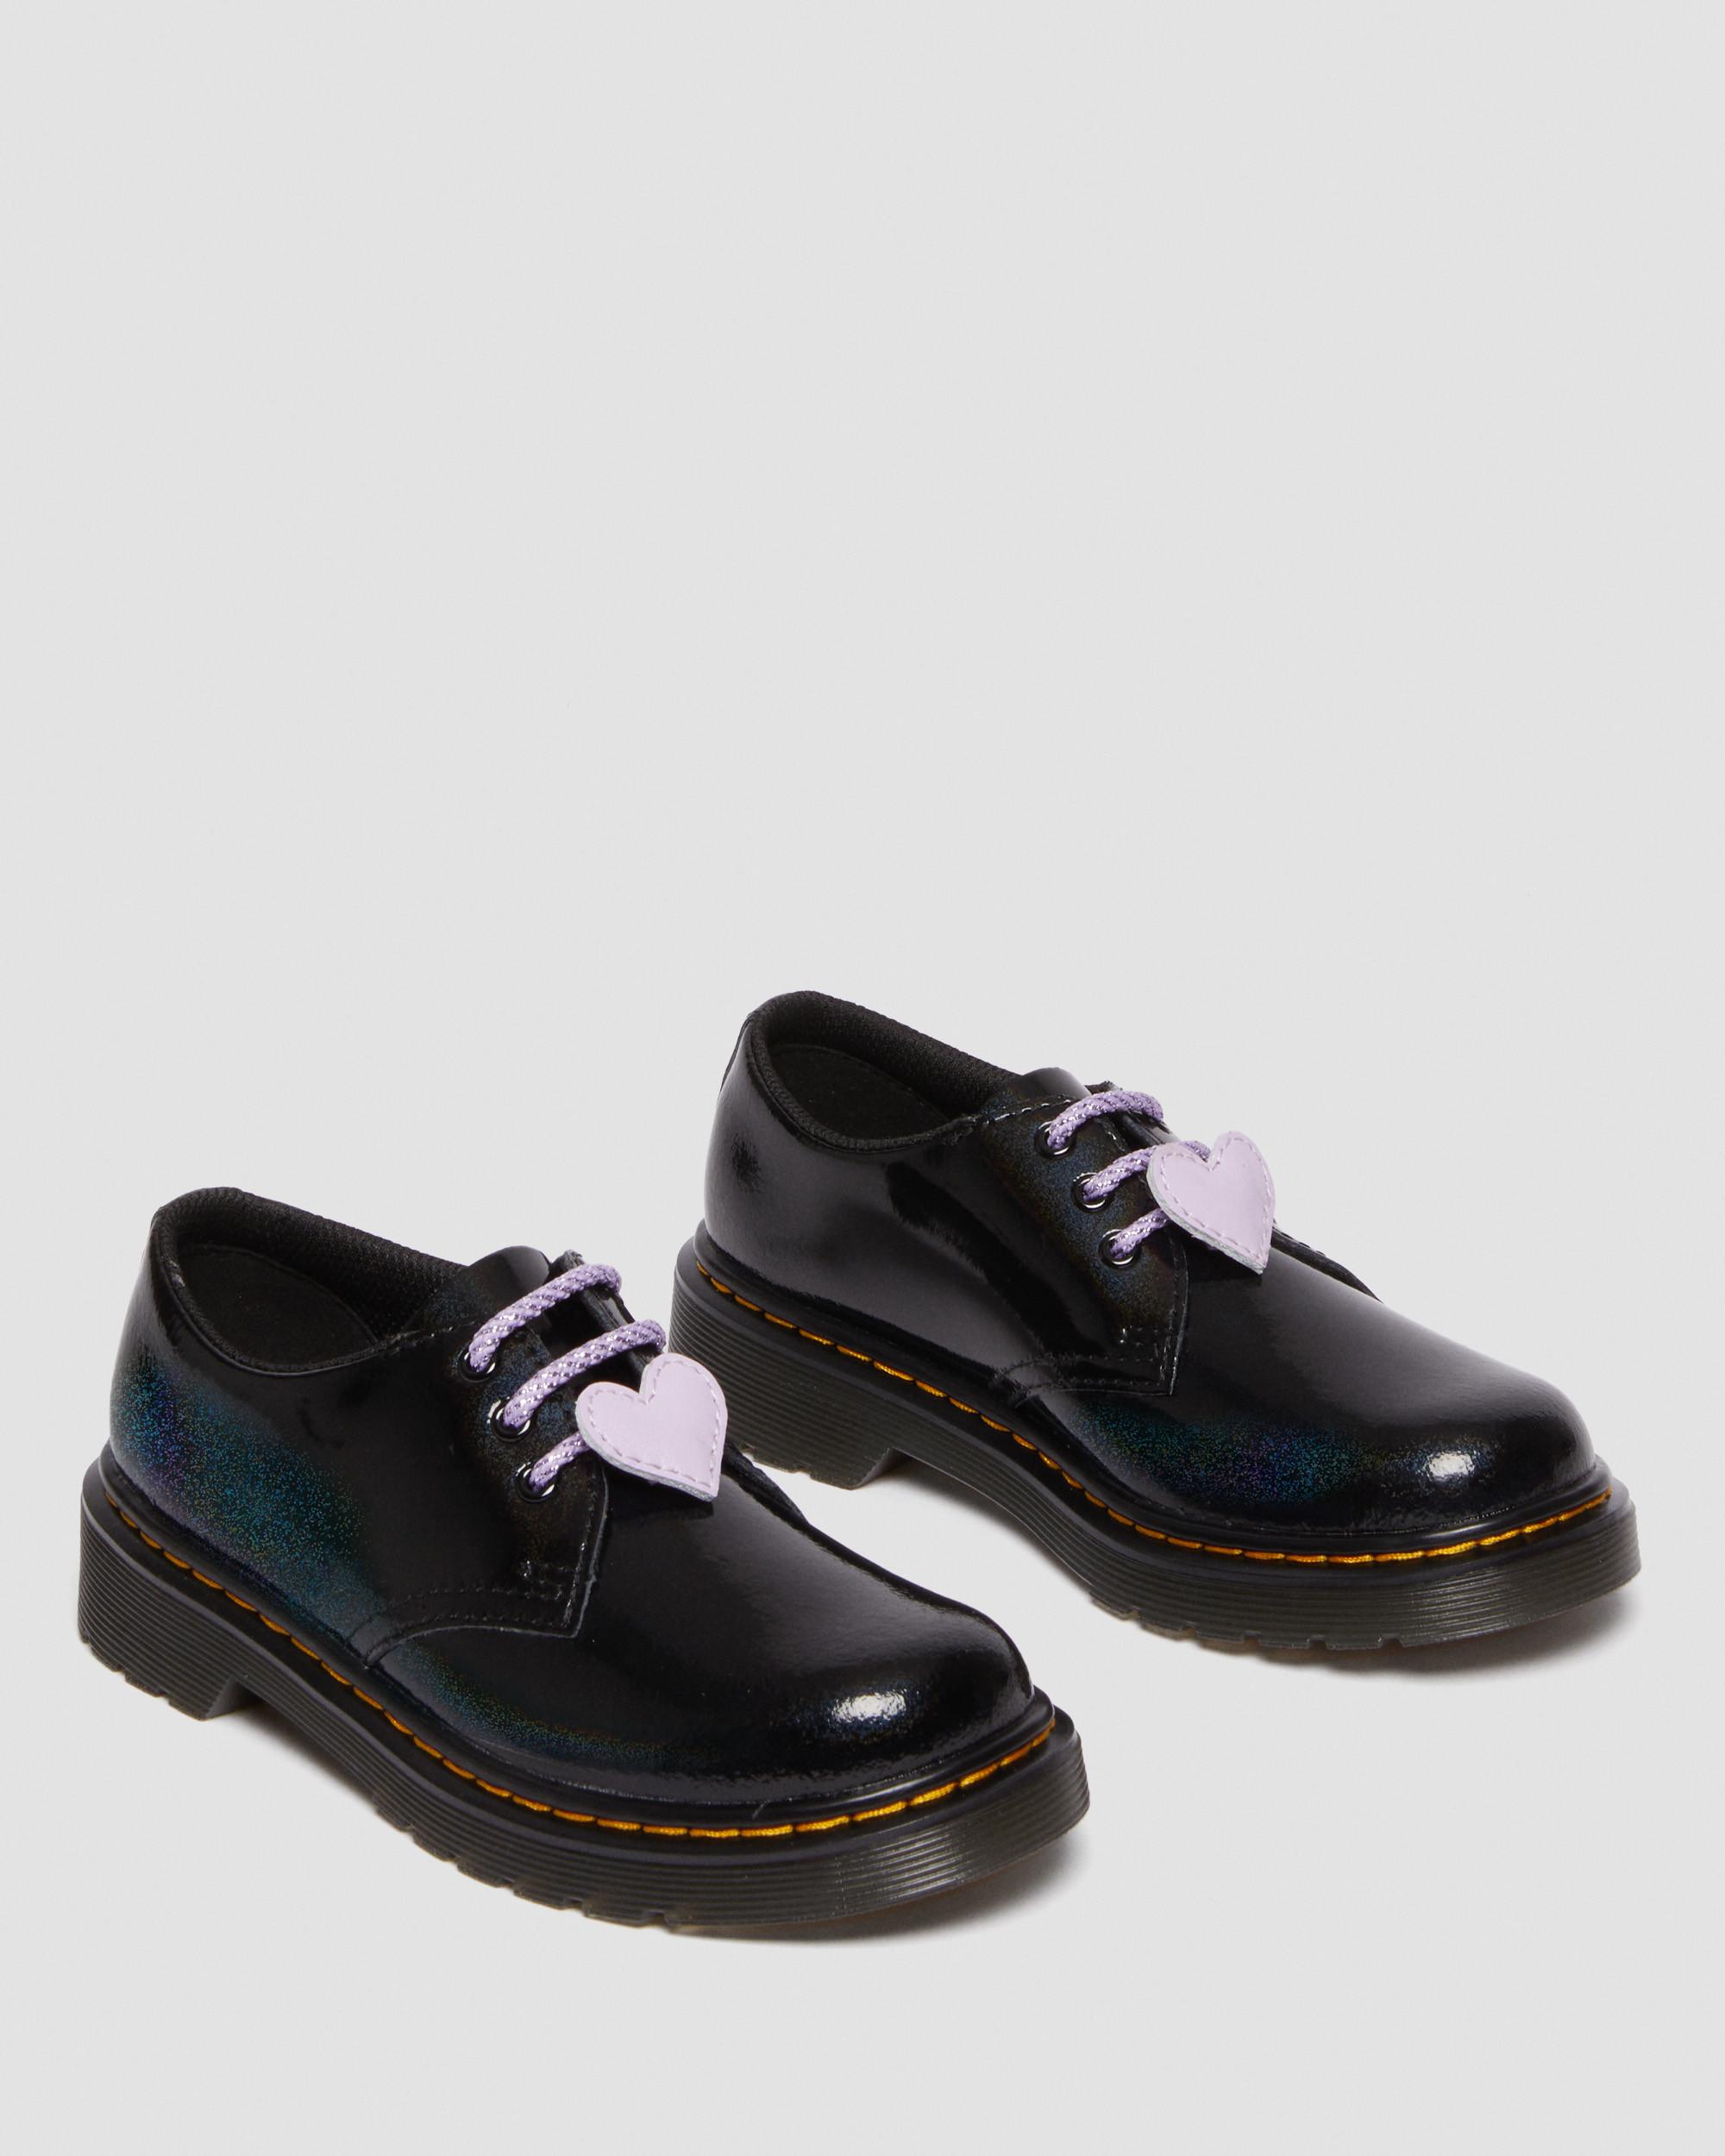 Junior 1461 Shimmer Heart Oxford Shoes in Black | Dr. Martens